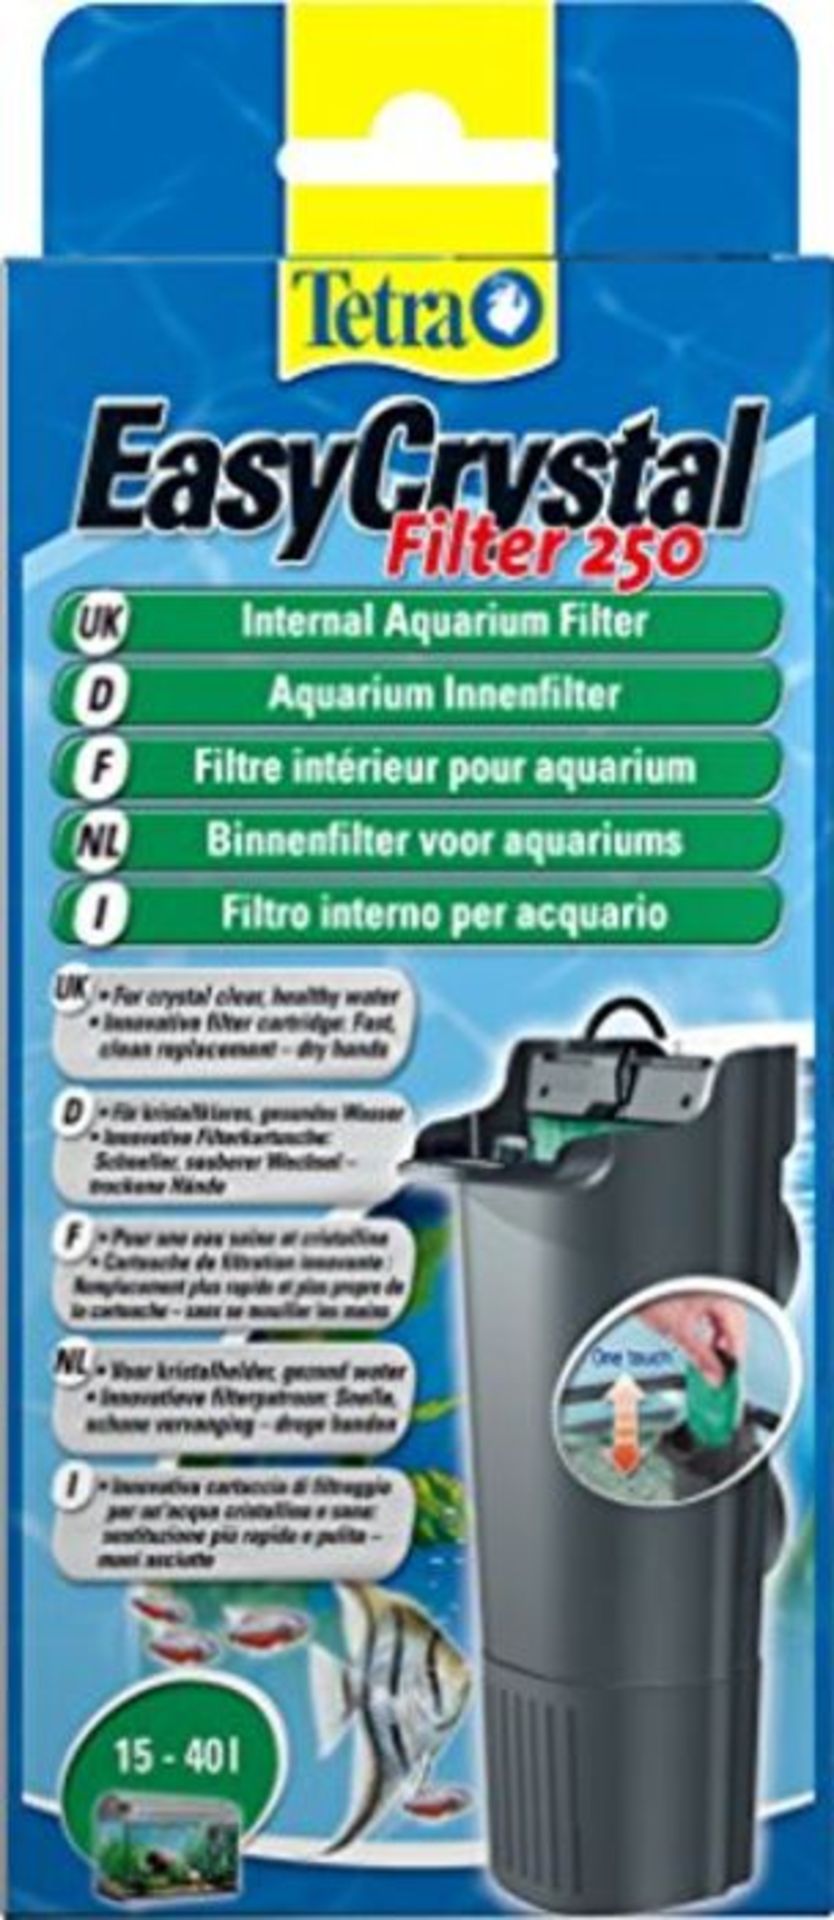 Tetra EasyCrystal 250 - Filtre IntÃ©rieur pour Aquarium de 15 Ã  40L - Triple Filt